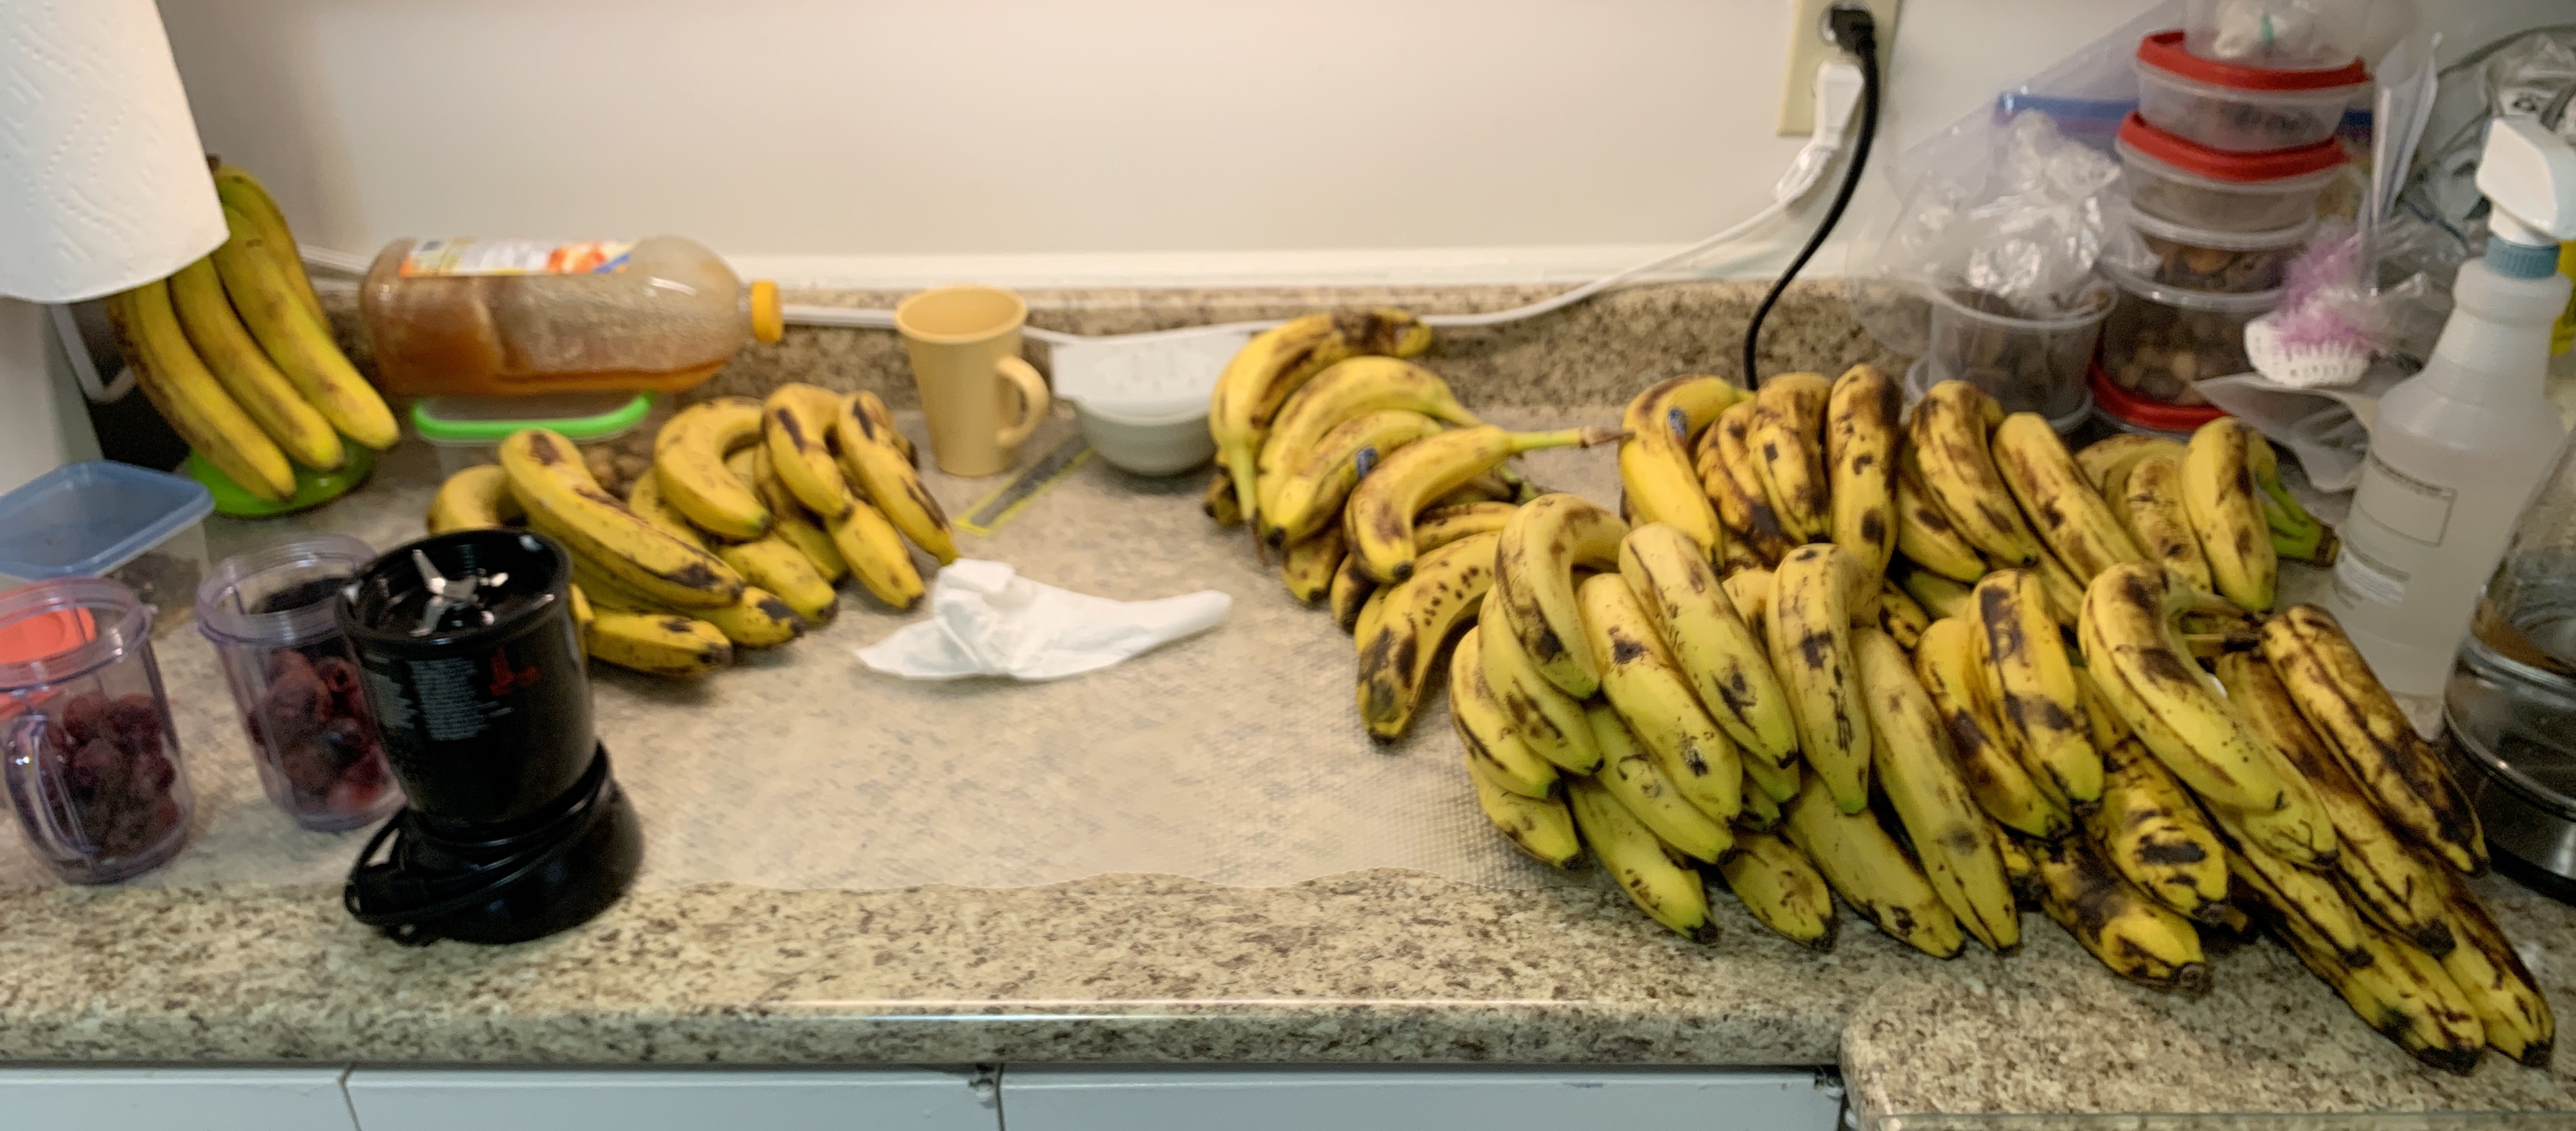 We bought bananas in bulk